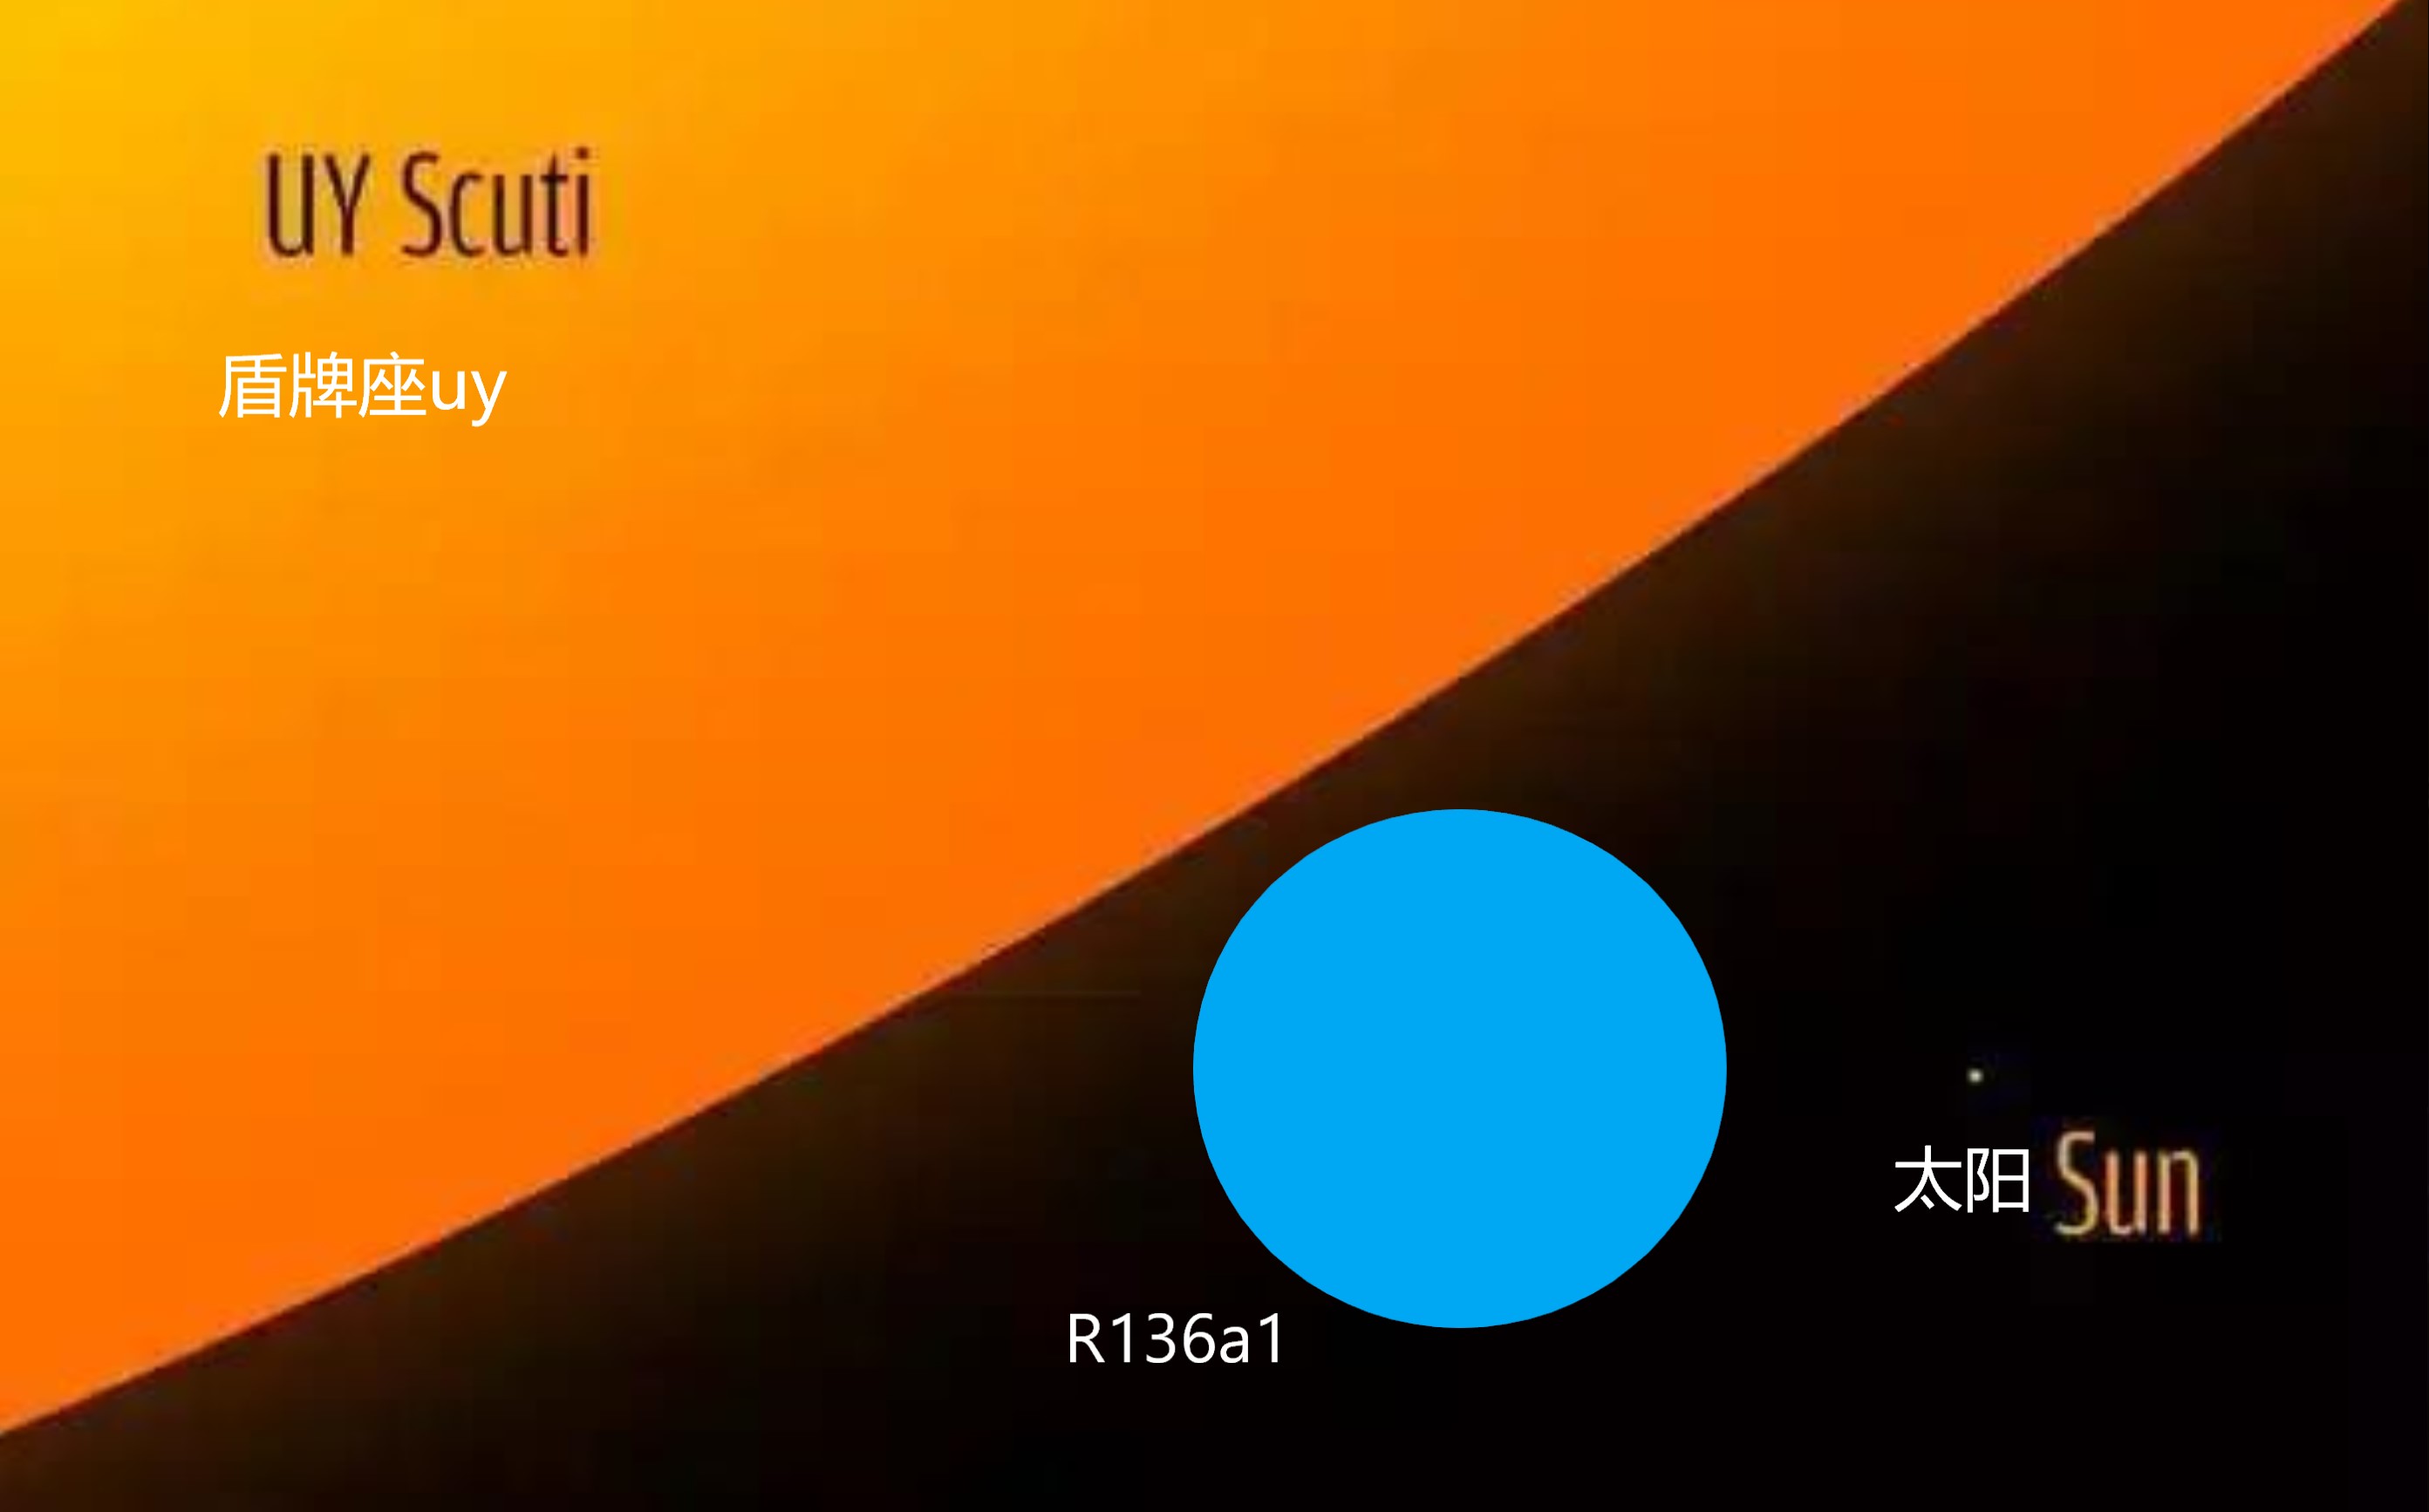 盾牌座uy是体积最大的恒星,它的温度也与体积成正比吗